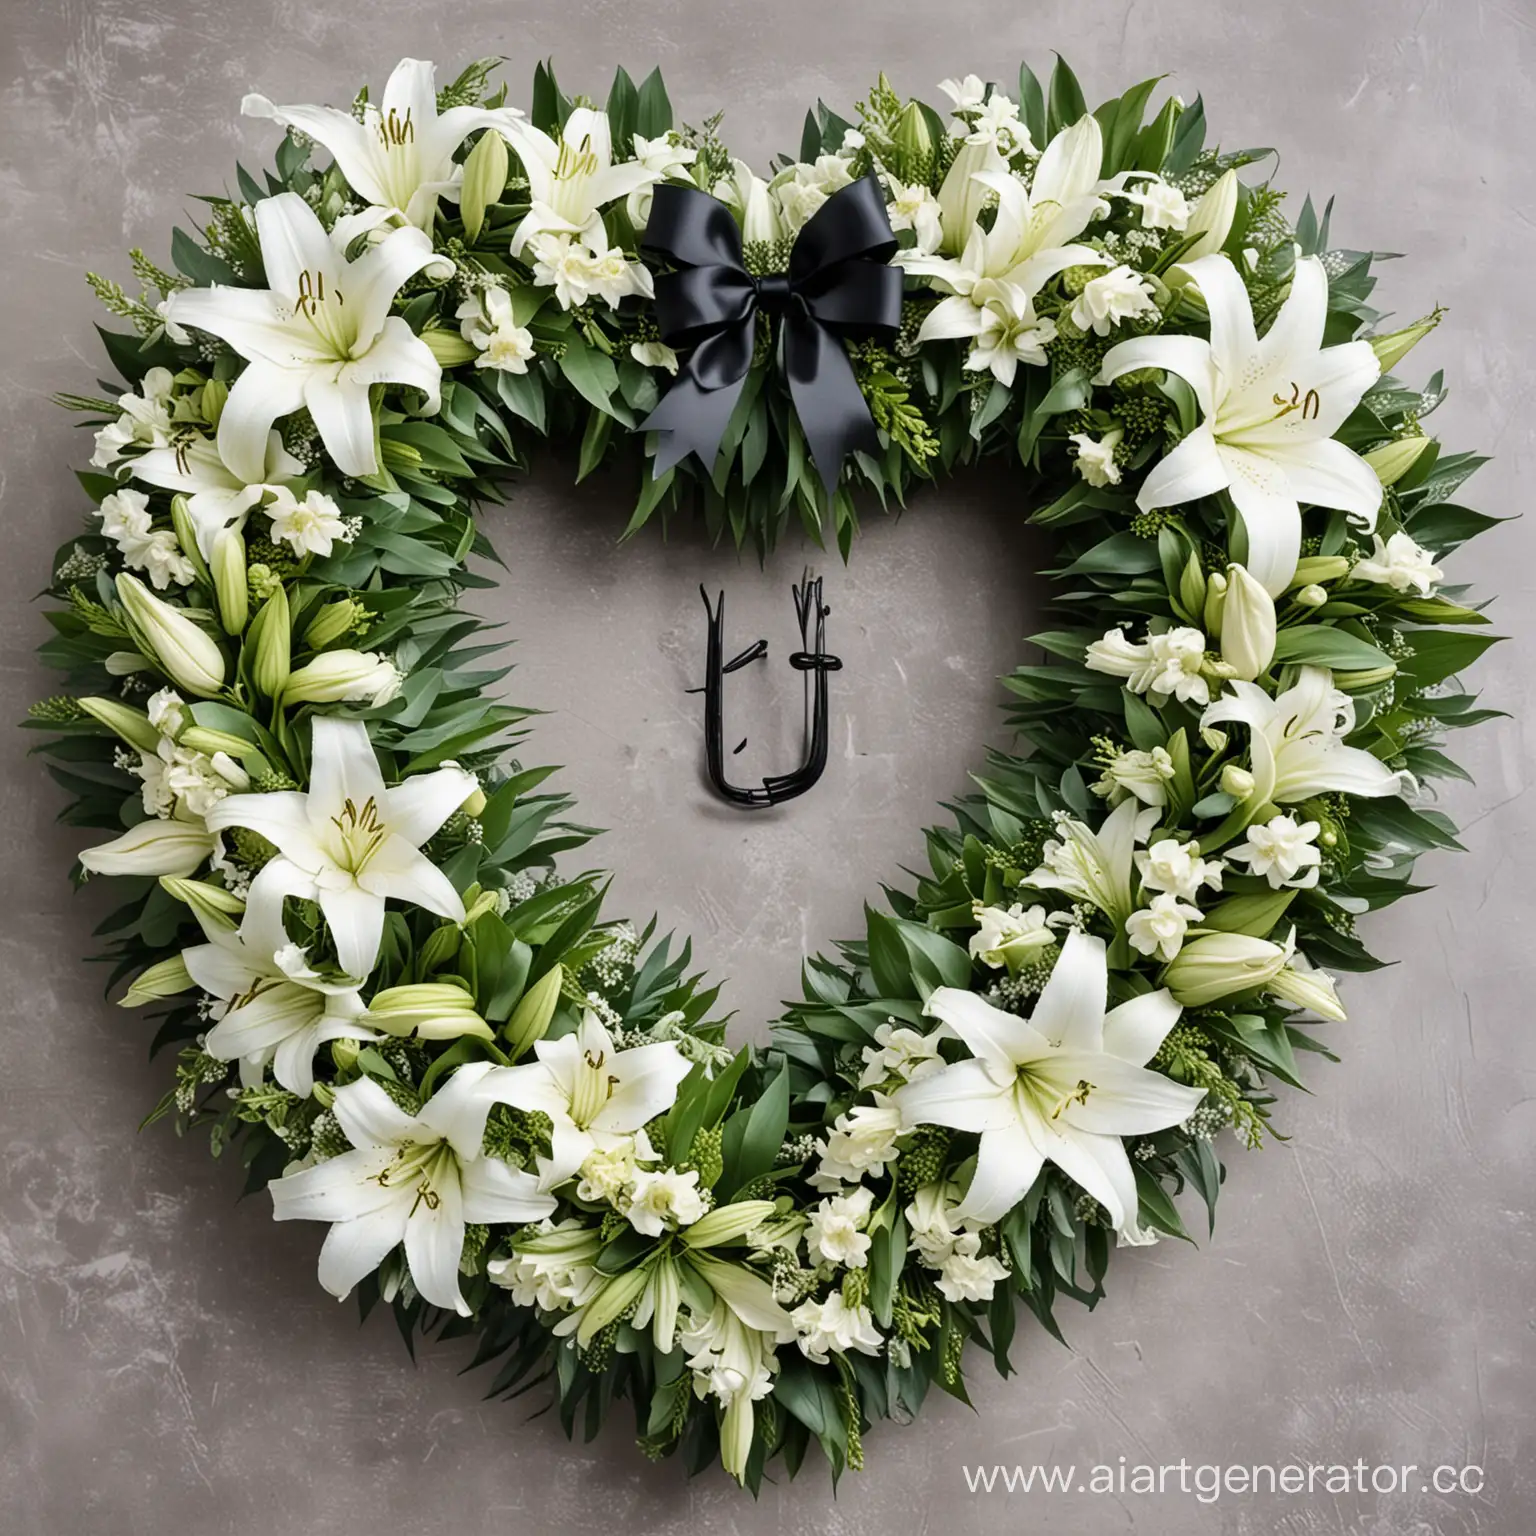 похоронный венок в виде сердечка с белыми лилиями и зелёными листами, а так же с чёрным бантиком и буквой ж по середине